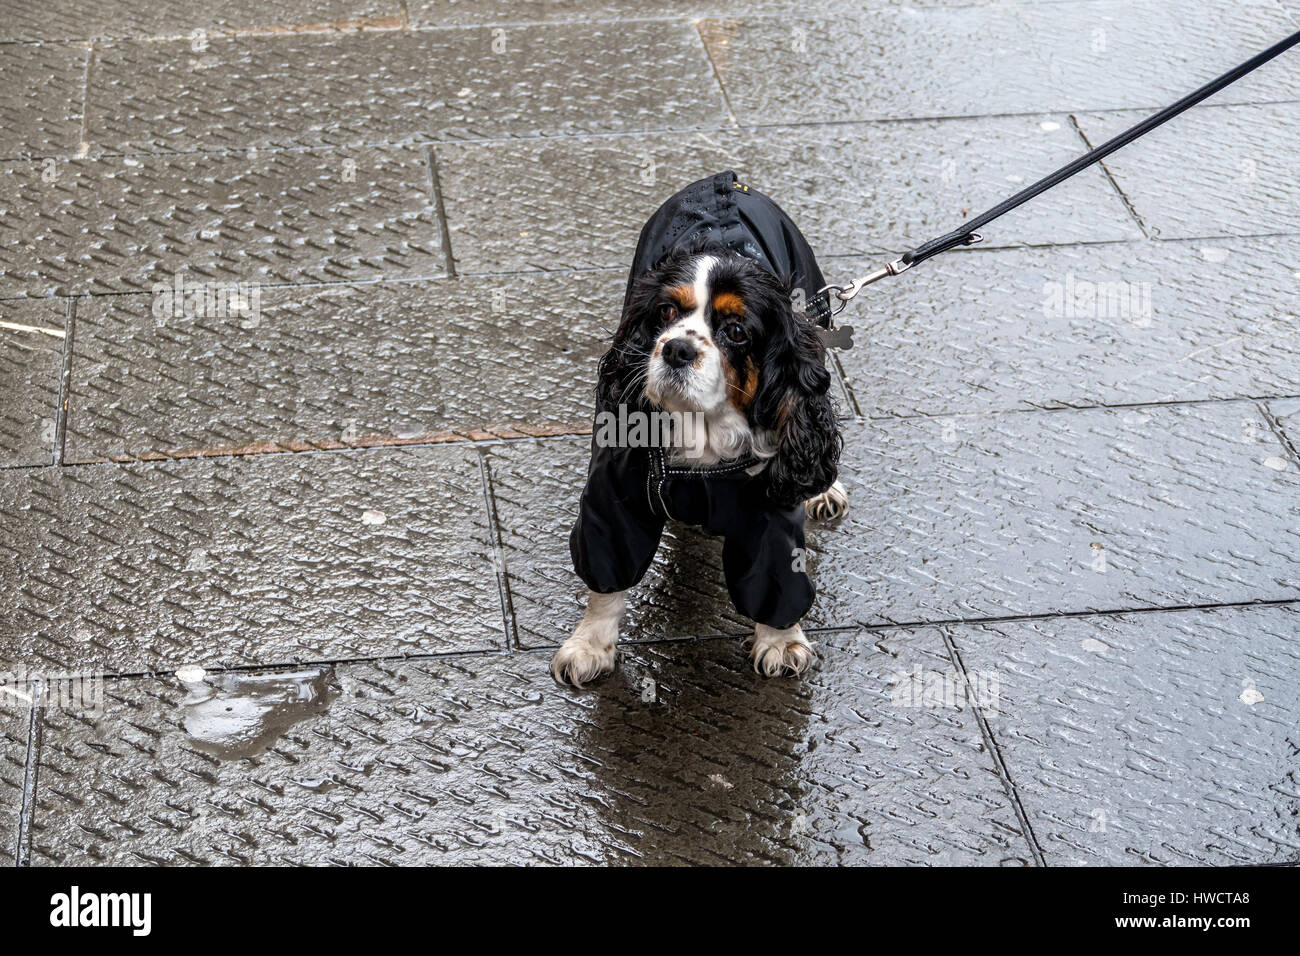 A dog is explained in a rope in the rain, Ein Hund wird an einer Leine im Regen ausgeführt Stock Photo